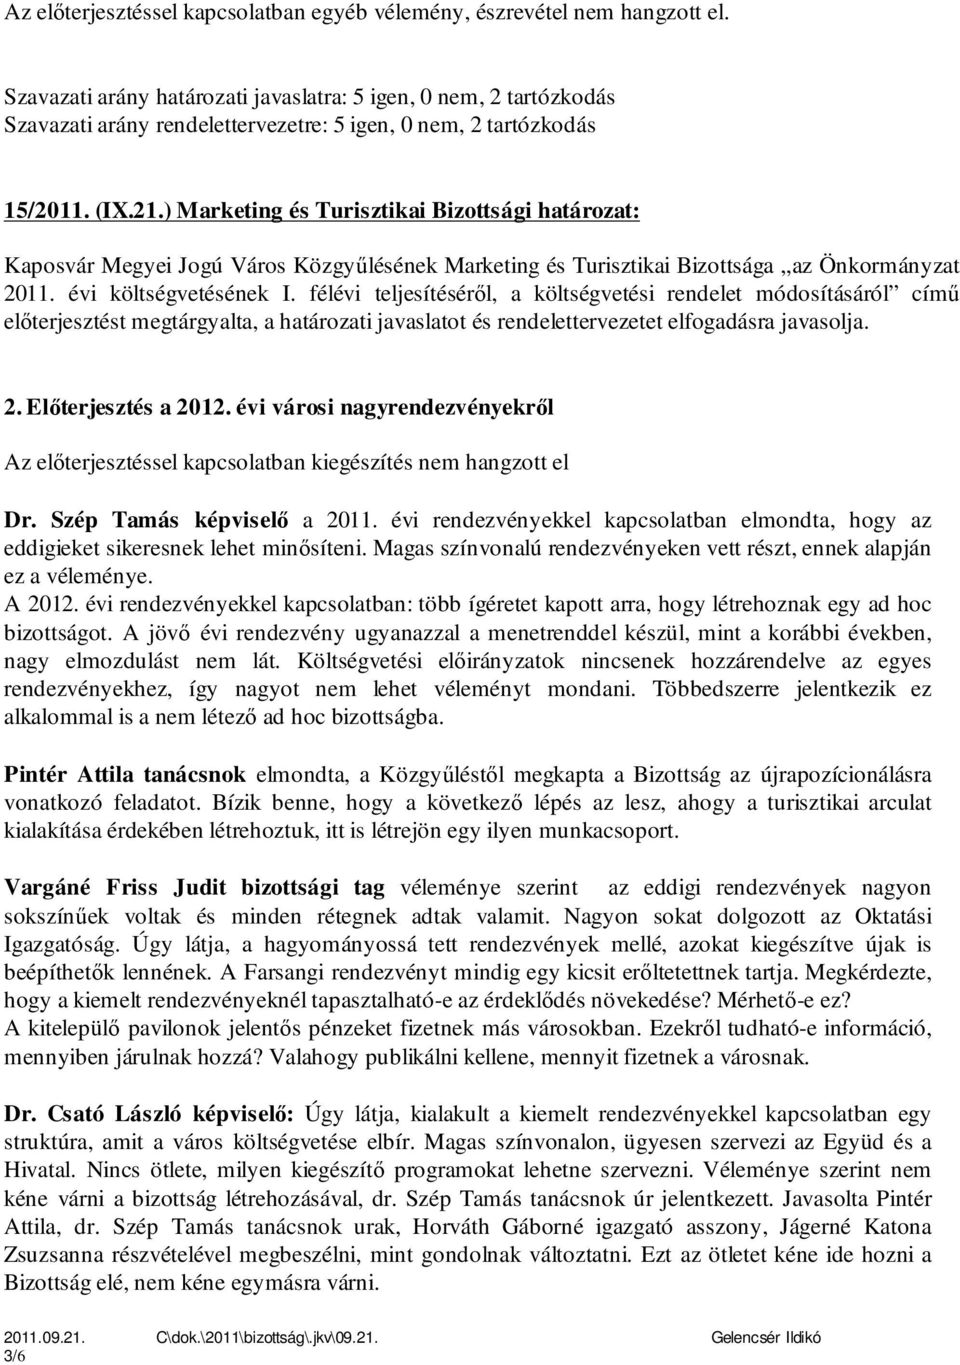 ) Marketing és Turisztikai Bizottsági határozat: Kaposvár Megyei Jogú Város Közgyűlésének Marketing és Turisztikai Bizottsága az Önkormányzat 2011. évi költségvetésének I.